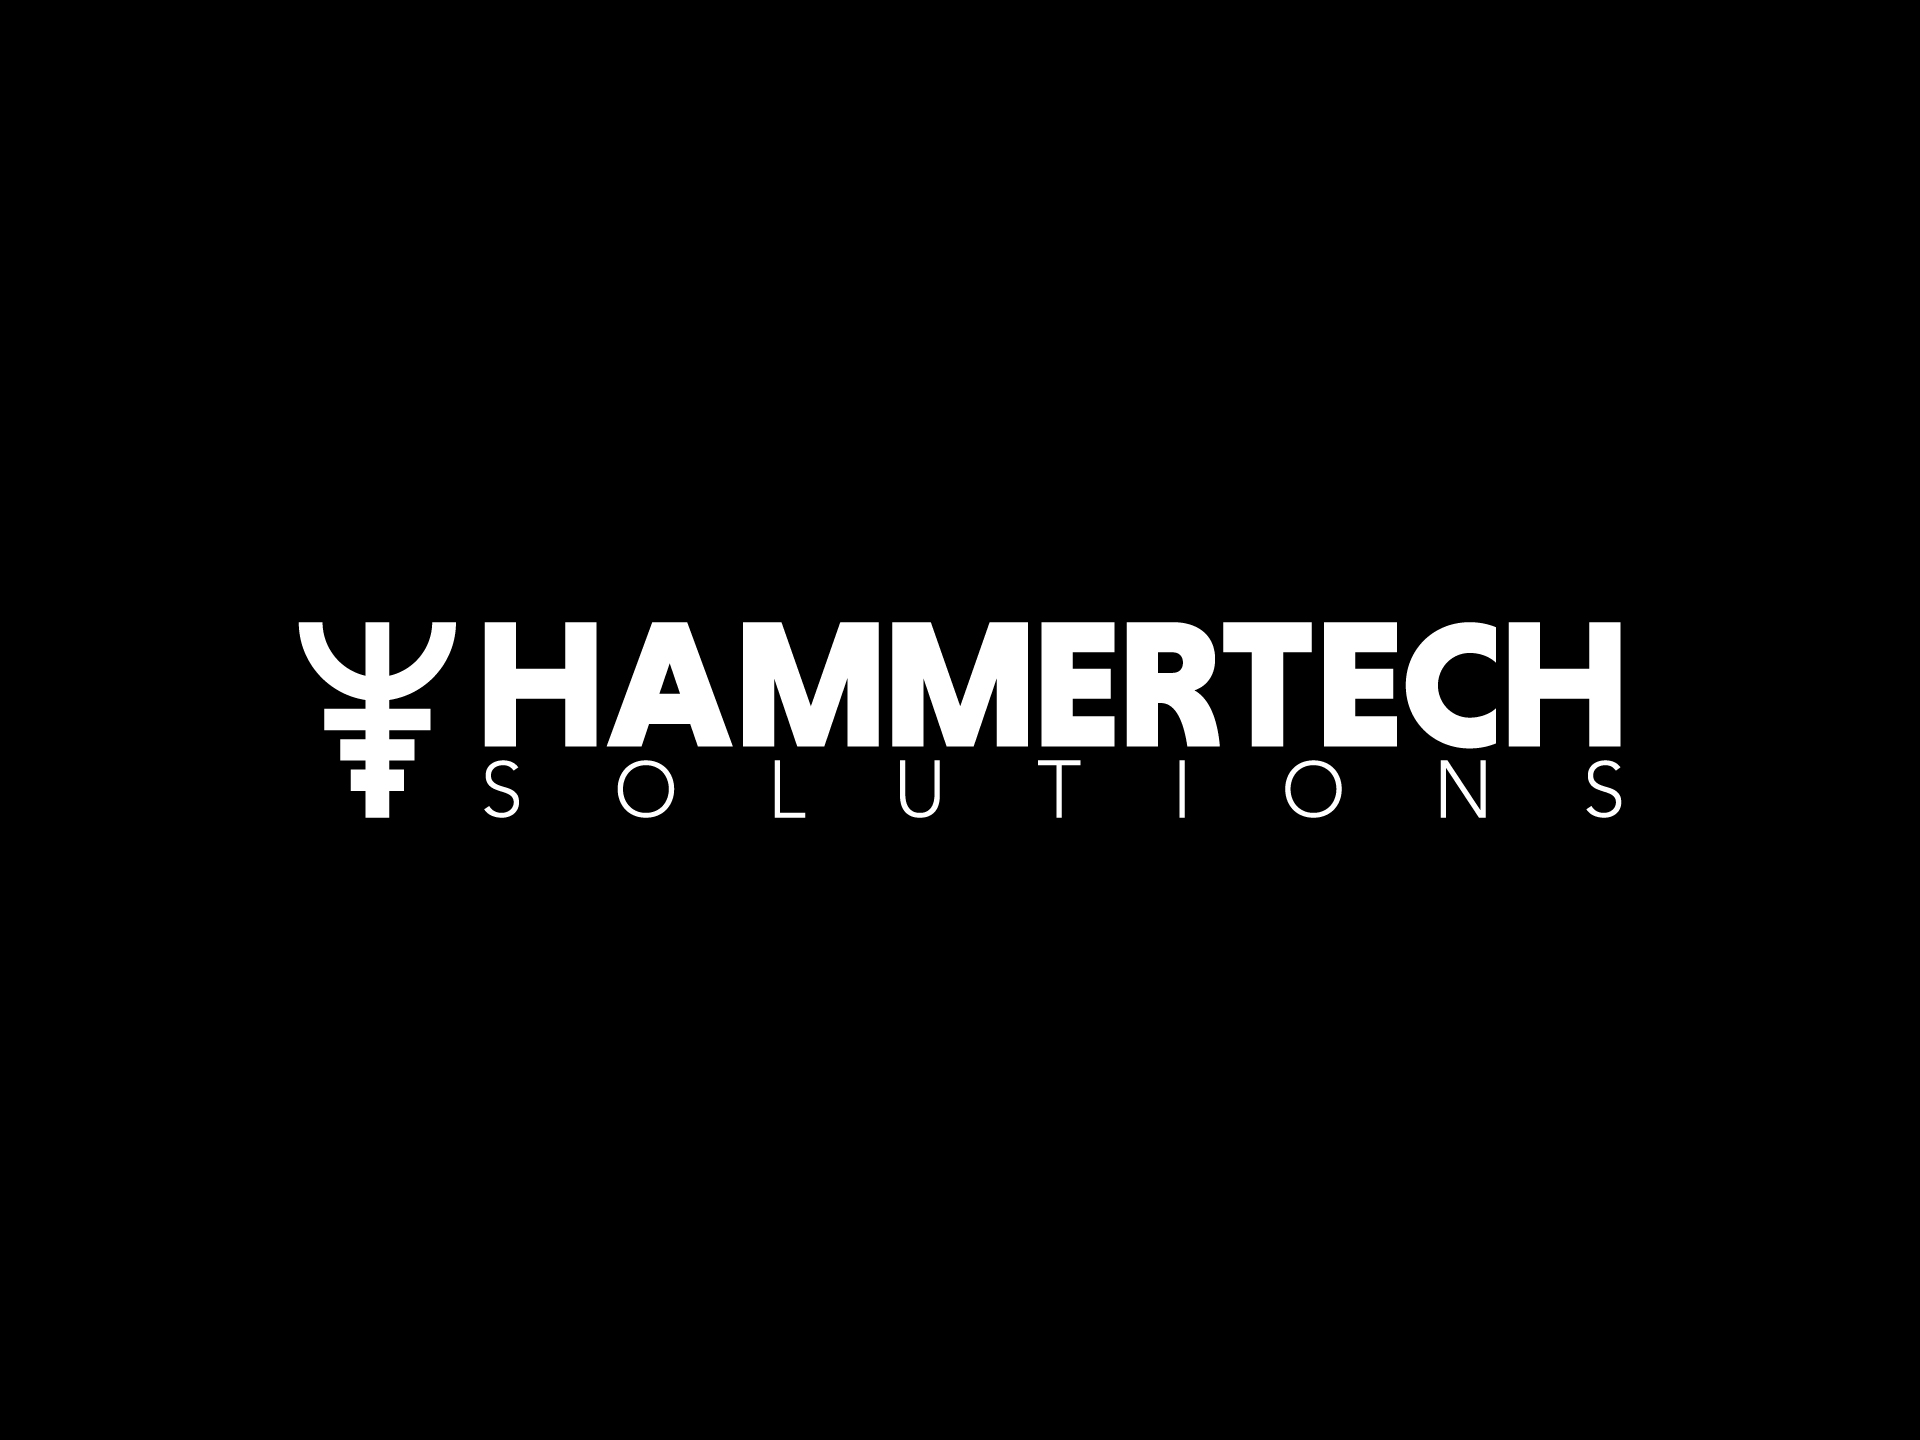 Hammertech Solutions